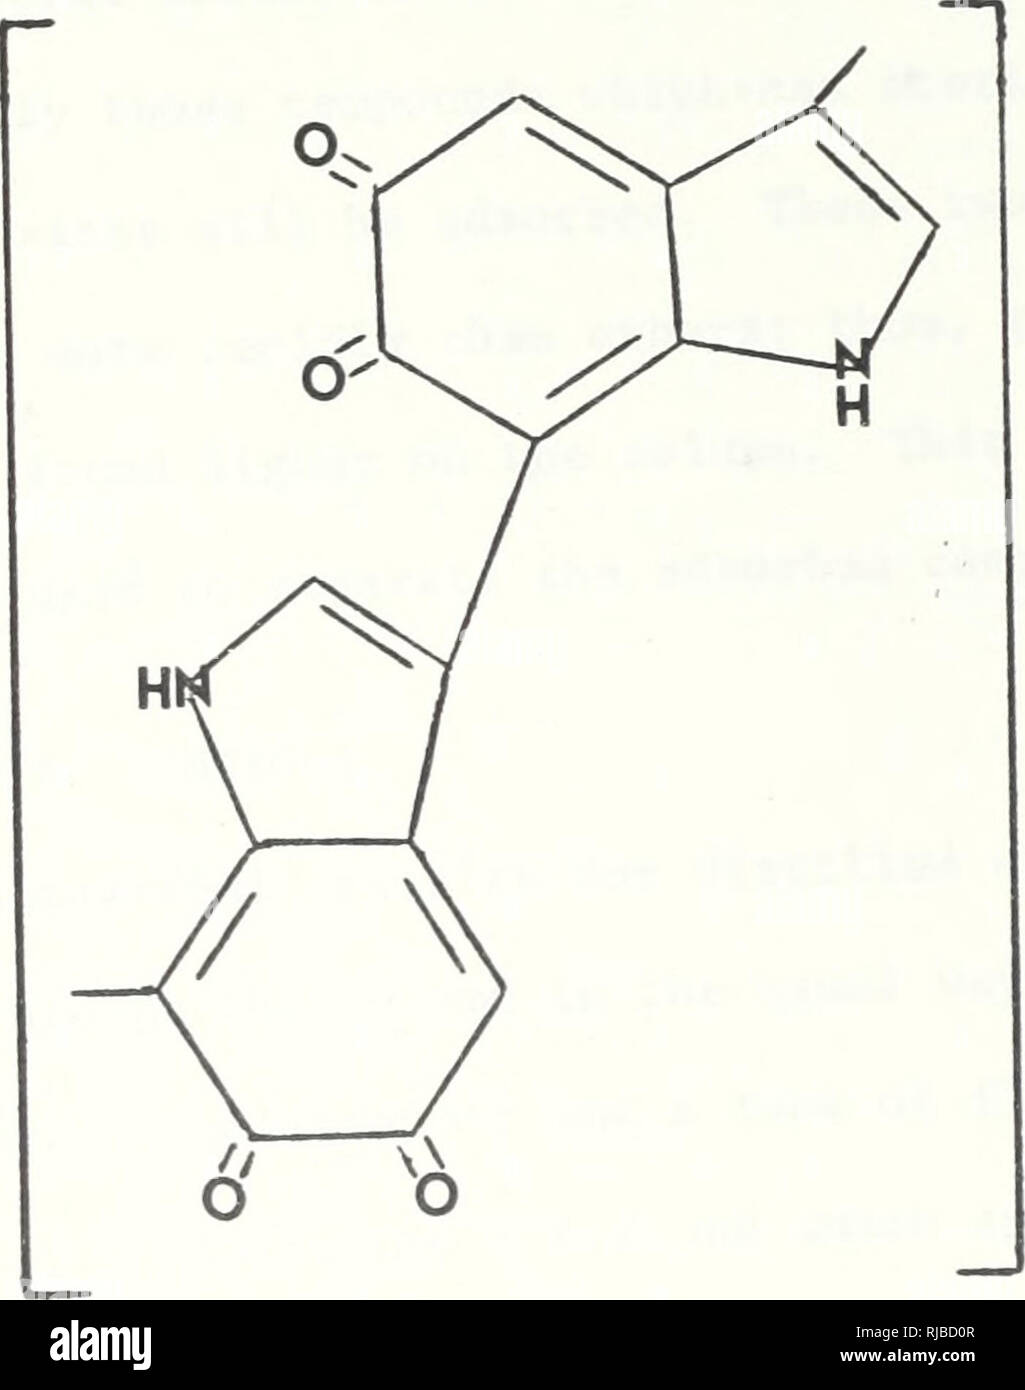 . La caratterizzazione di Gelbstoffe nella baia di Monterey mediante adsorbimento di nylon, UV, e cromatografia su carta.. Oceanografia. Q VoH -J- Na OH  Q λo'Na* -f H20 Fig. 45. Fenolo acido coniugato, Base Reazione H O â A-C-(CH2)4-C-N-(CH2)6- b h Fig.46. Hylon struttura molecolare. p, 47 Duursma umici della struttura 80. Si prega di notare che queste immagini vengono estratte dalla pagina sottoposta a scansione di immagini che possono essere state migliorate digitalmente per la leggibilità - Colorazione e aspetto di queste illustrazioni potrebbero non perfettamente assomigliano al lavoro originale. Lewis, Laird William.. Monterey, California: U. S. Naval Postgraduate School Foto Stock